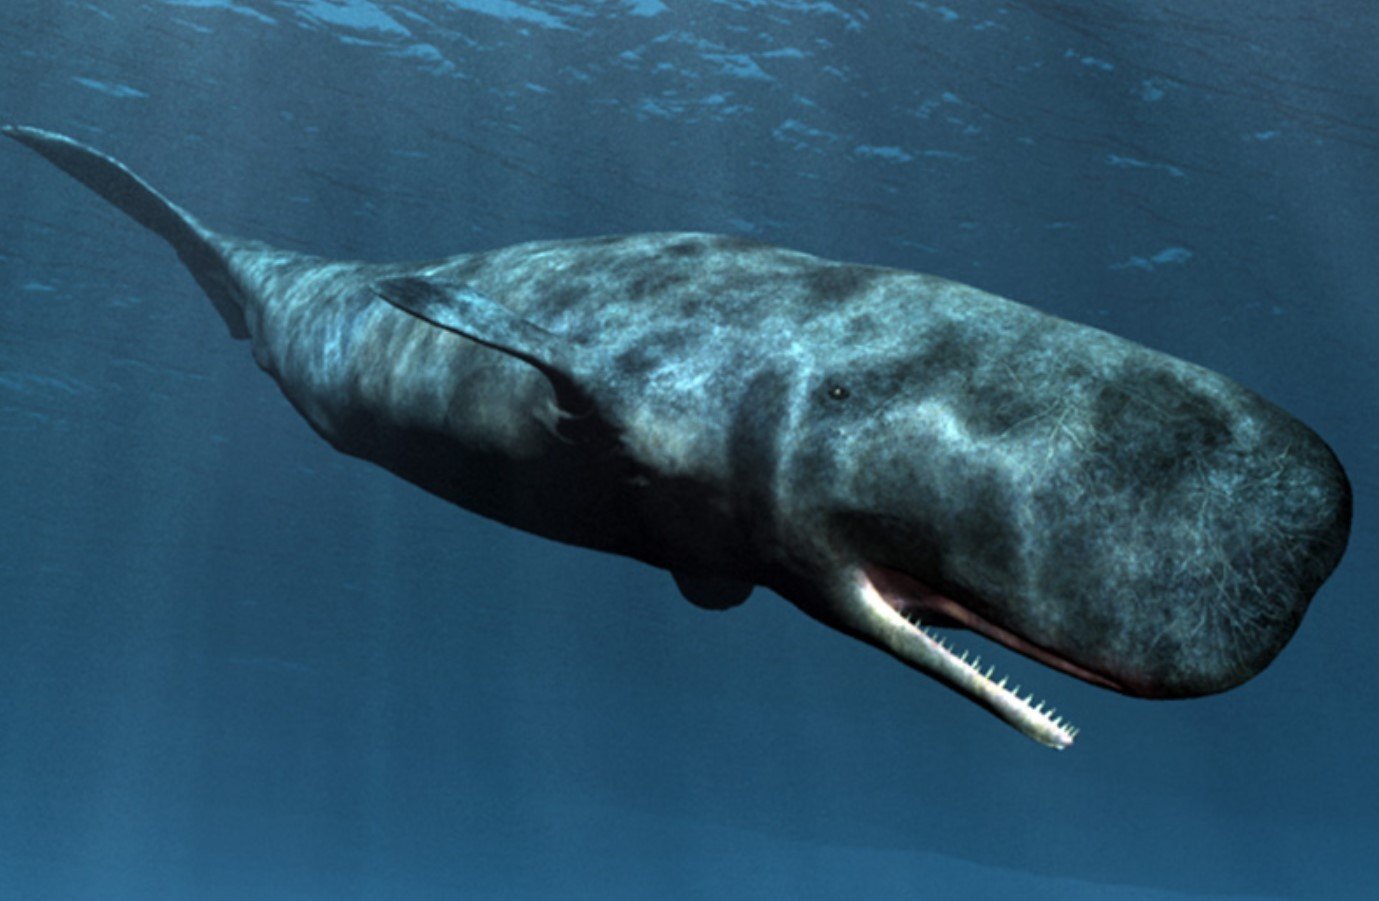 Кошелот. Кашалот это зубатый кит. Кашалот в Антарктиде. Пятнистый Кашалот. Physeter macrocephalus (Кашалот).